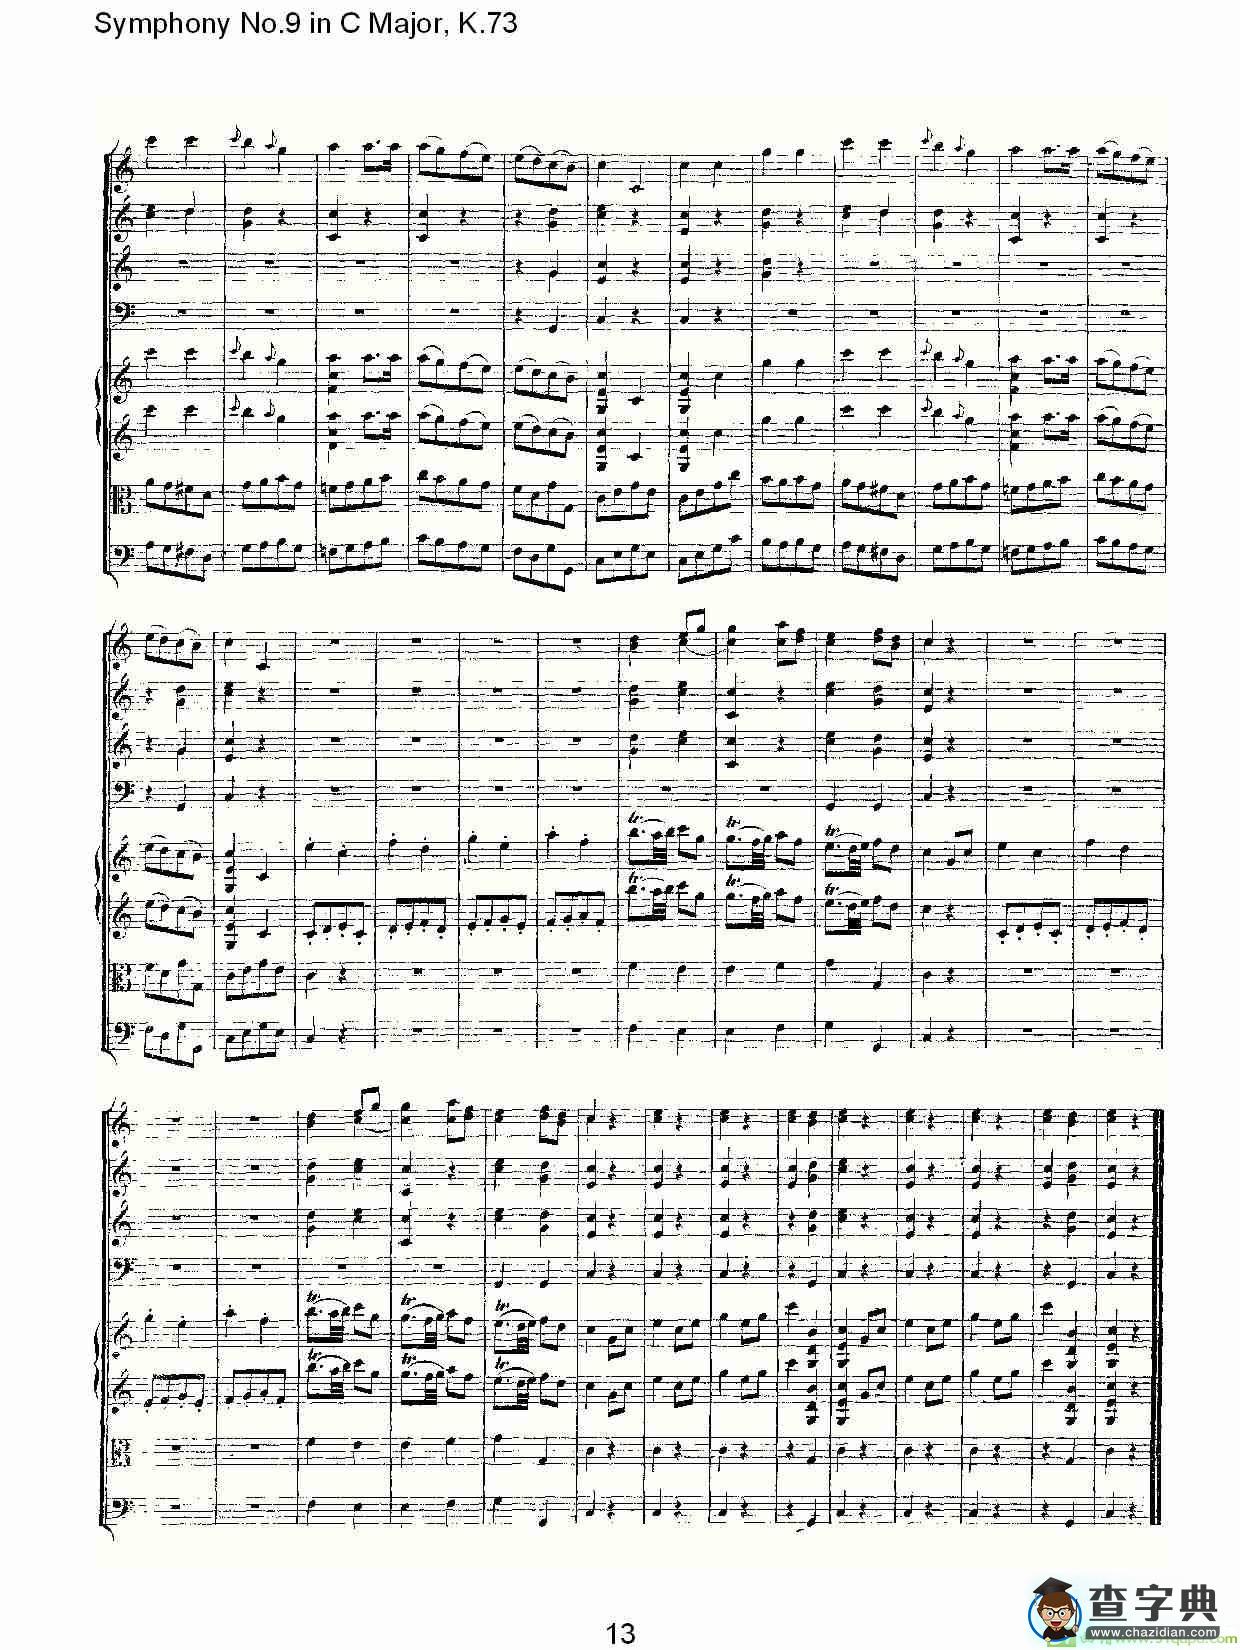 Symphony No.9 in C Major, K.73简谱